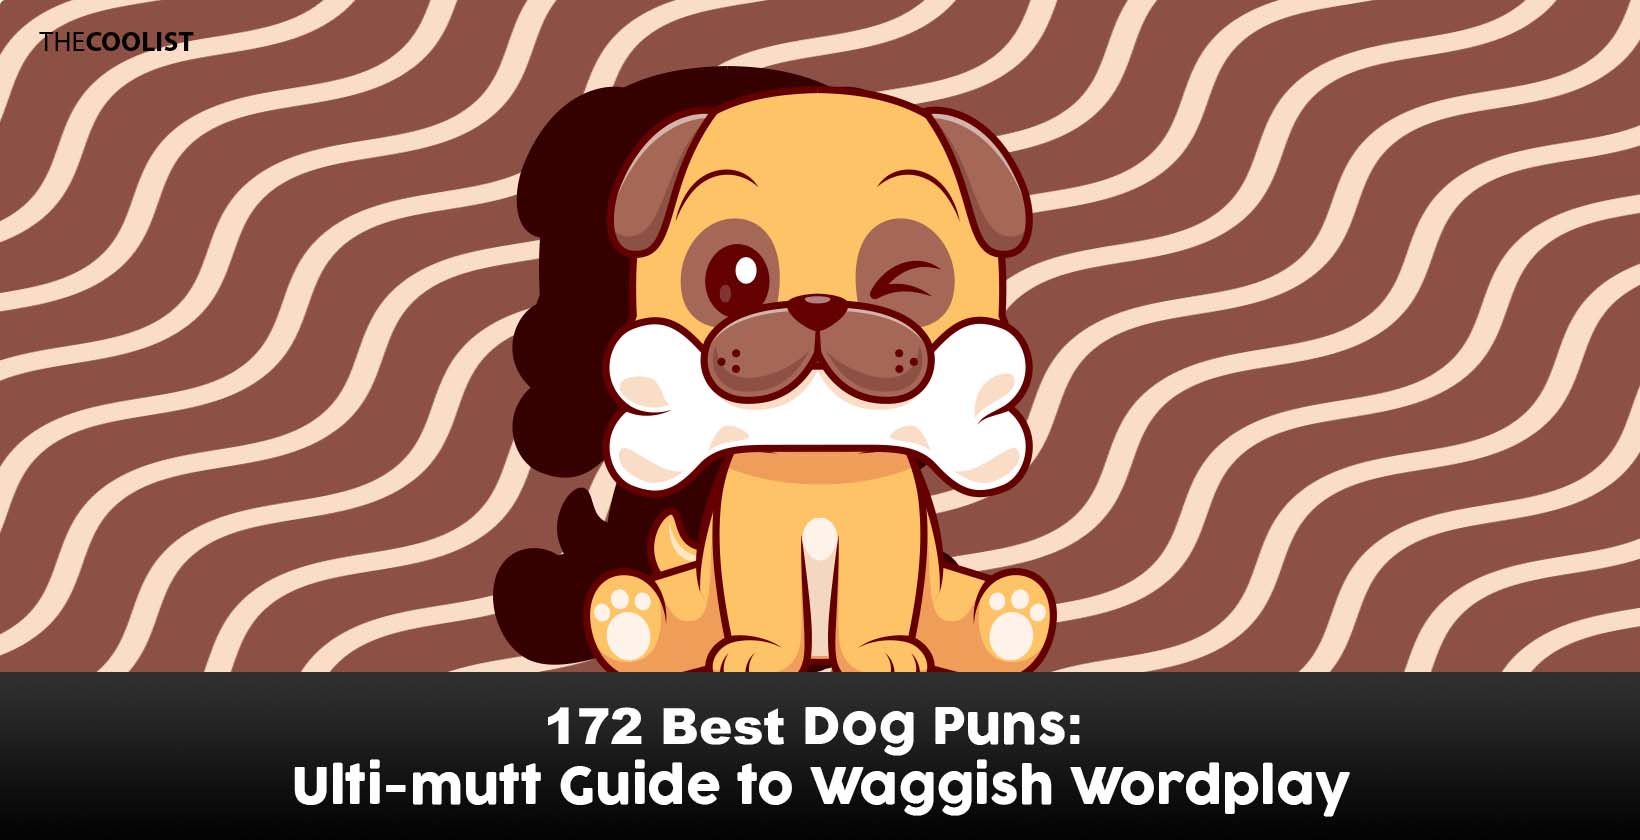 172 Dog Puns: Ulti-mutt Guide to Waggish Wordplay